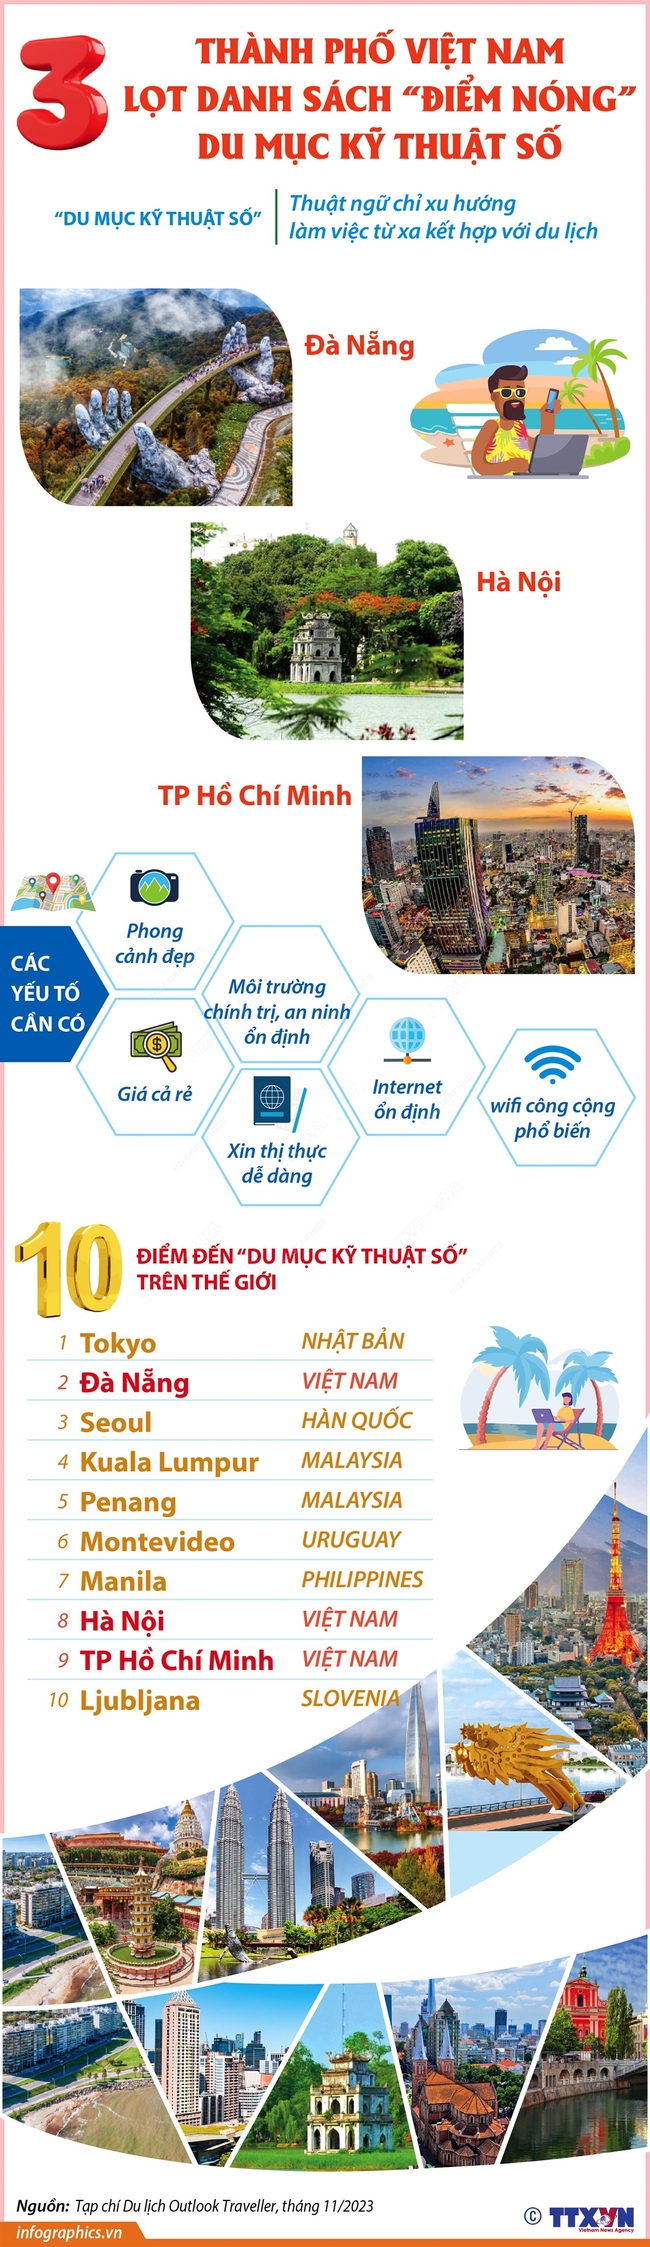 3 thành phố Việt Nam lọt danh sách 'điểm nóng' du mục kỹ thuật số - Ảnh 1.